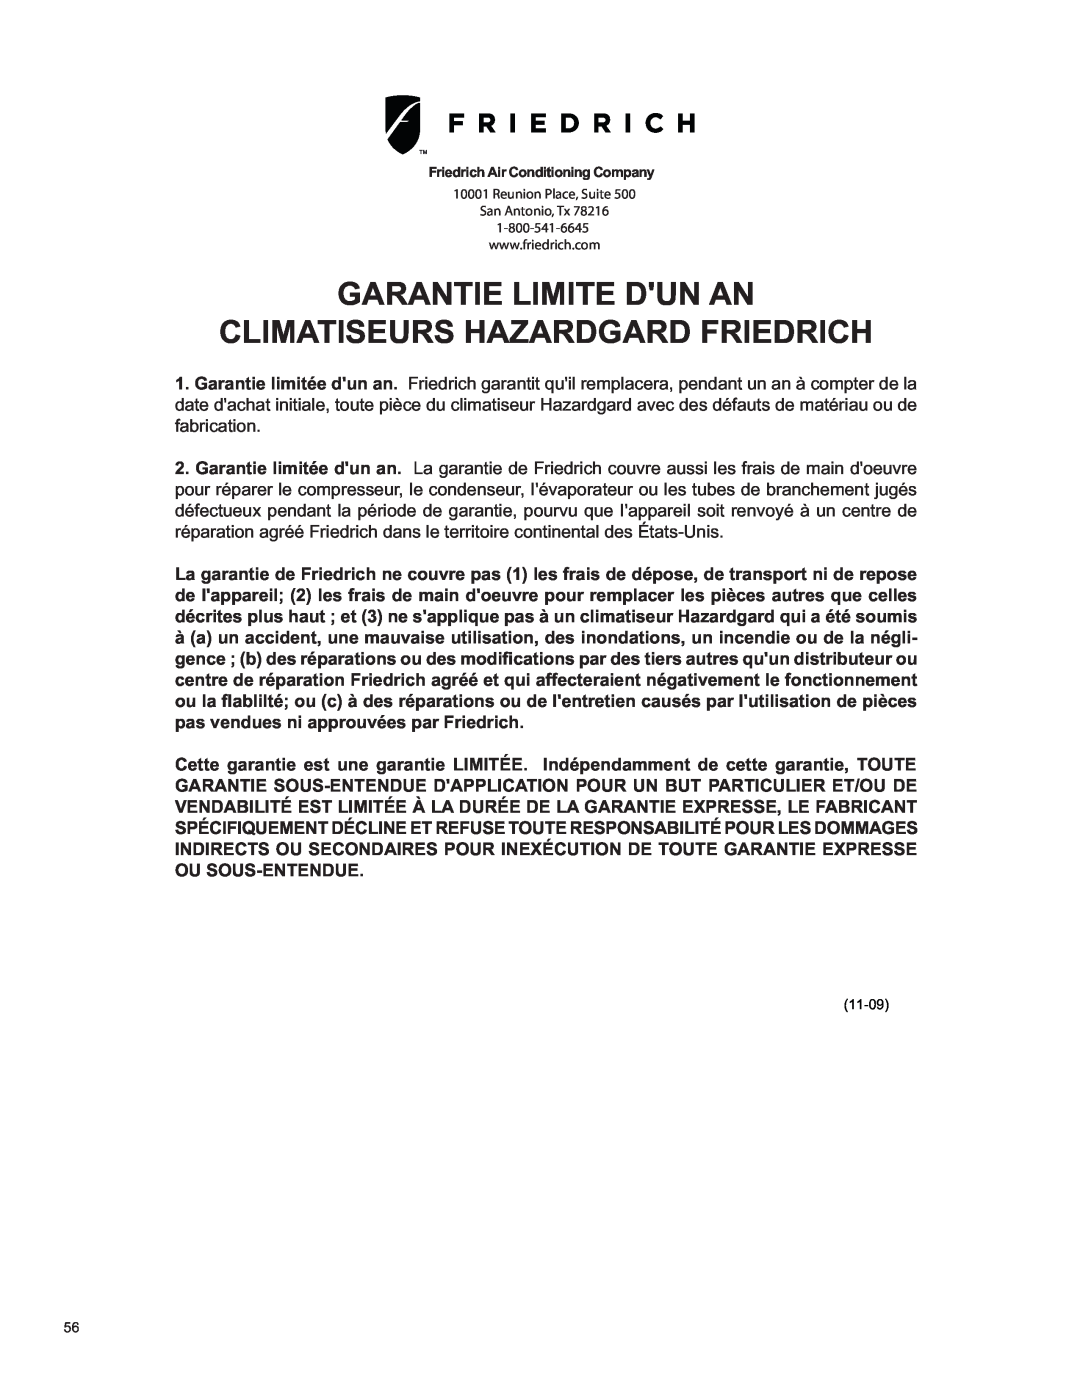 Friedrich SH15 operation manual Garantie Limite Dun An, Climatiseurs Hazardgard Friedrich 